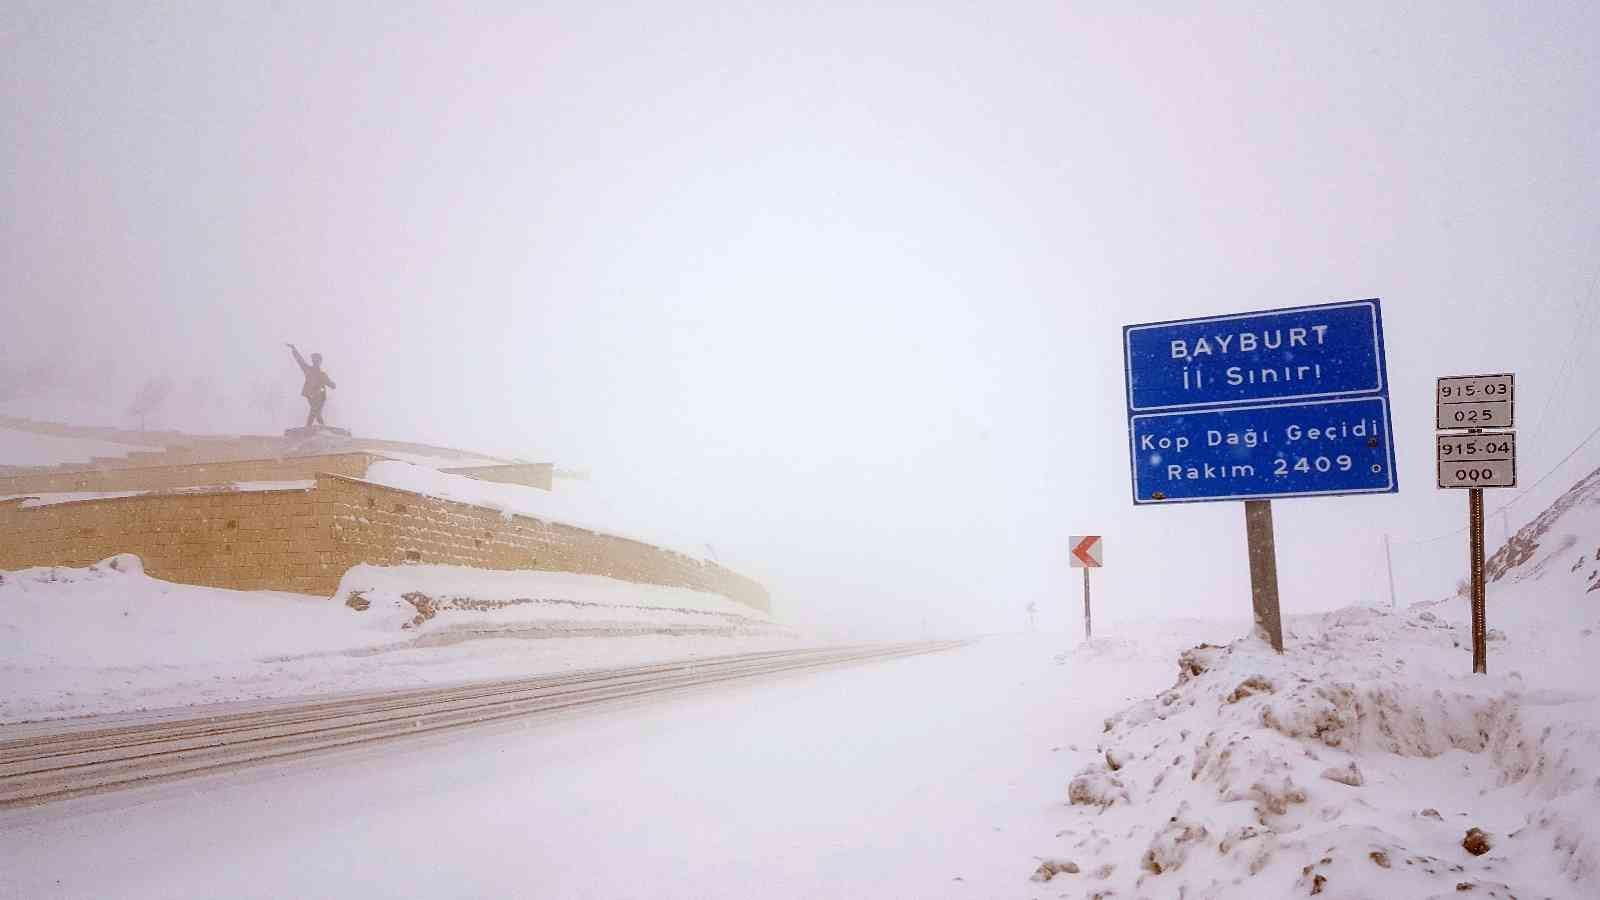 Kop dağında kar ve tipi ulaşımı olumsuz etkiliyor #bayburt